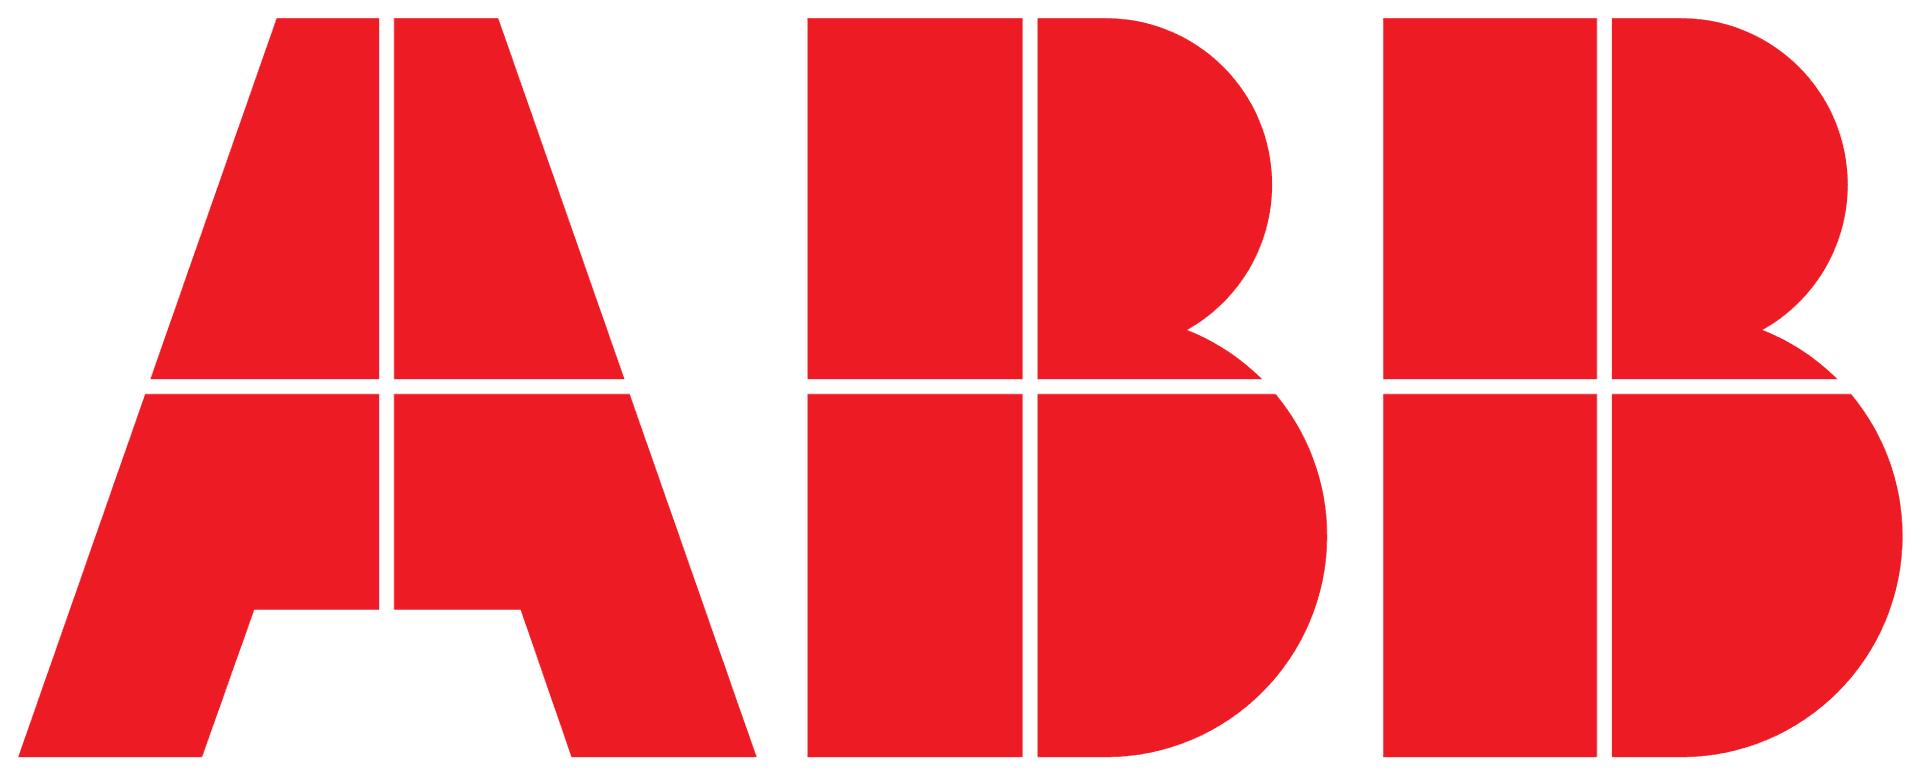 Hersteller: ABB